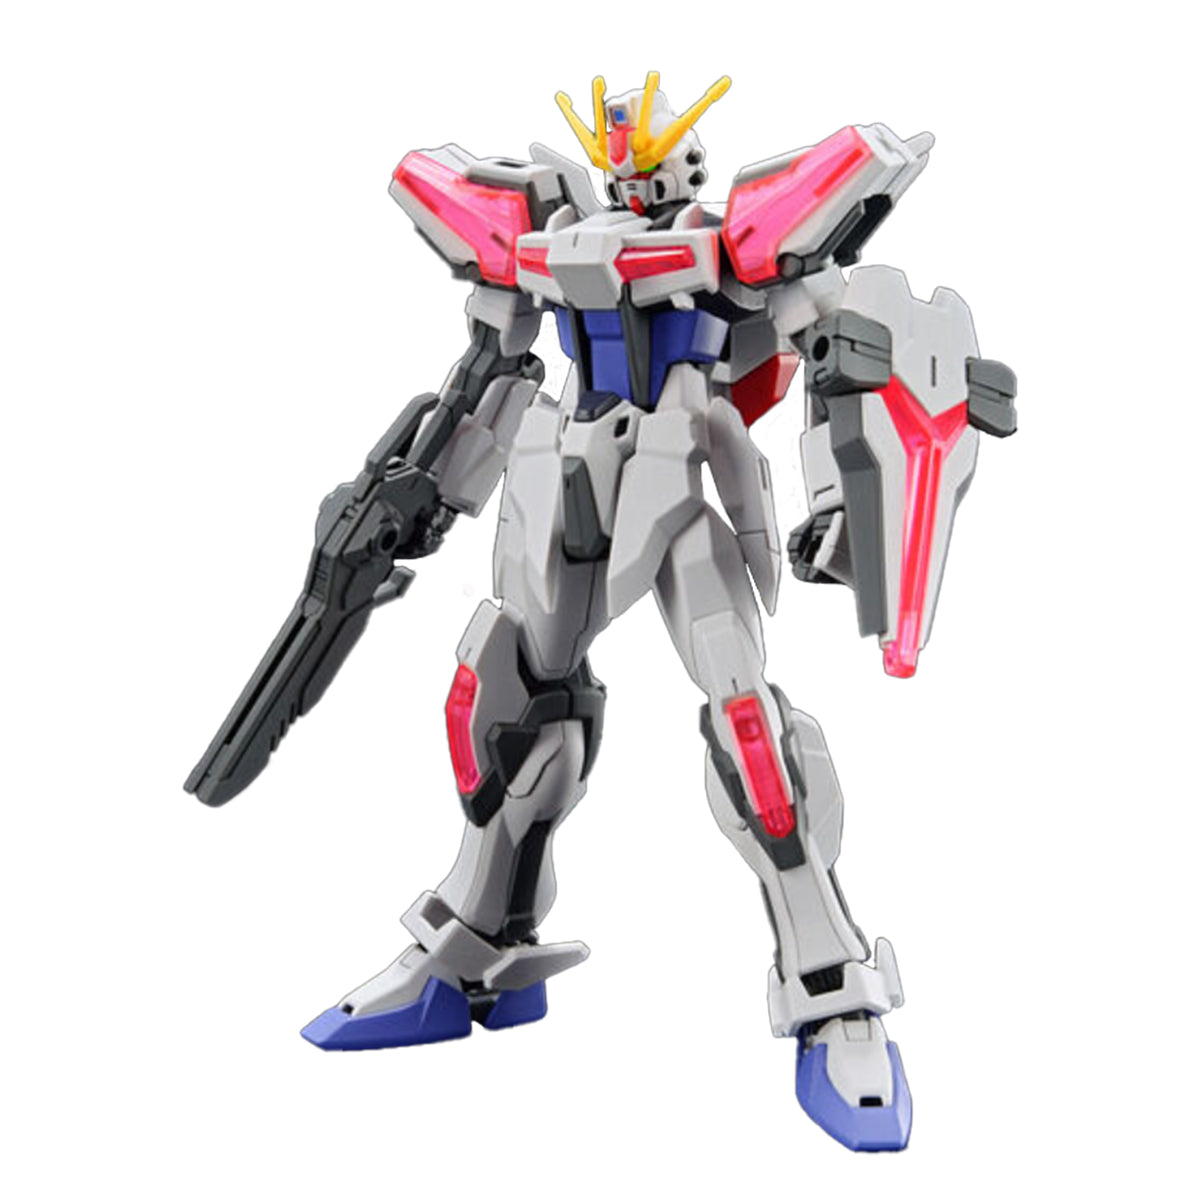 Bandai - Entry Grade 1/144 Build Strike Exceed Galaxy "Gundam Build Metaverse"